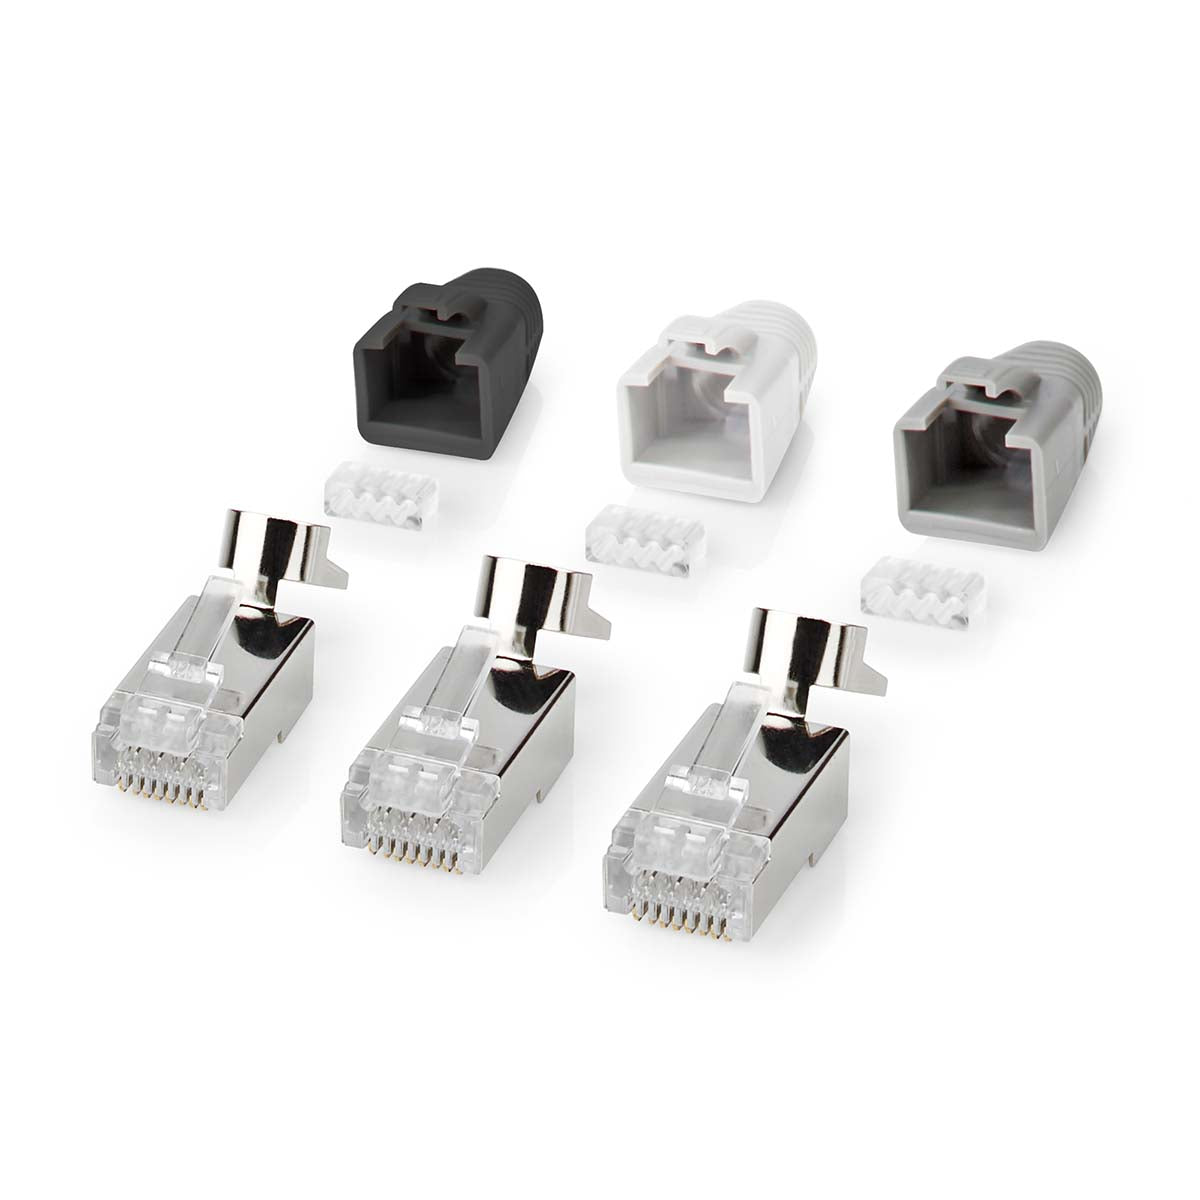 Nedis set 10 pezzi connettori RJ45, plug per cavi di rete CAT7 FTP, contatti placcati, guaina antirottura, grigio, nero e bianco